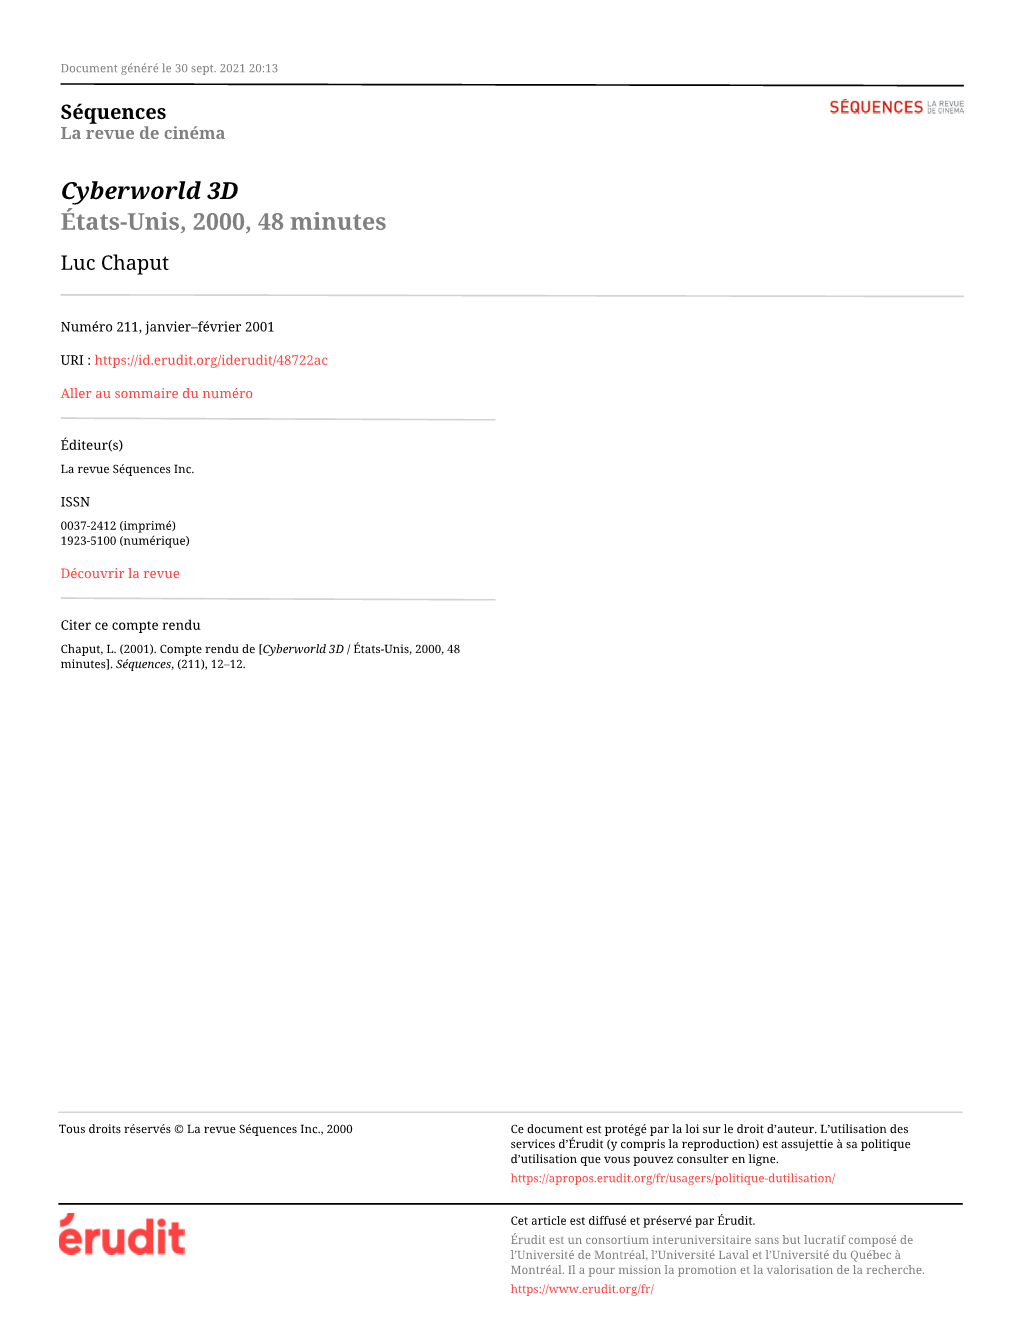 Cyberworld 3D / États-Unis, 2000, 48 Minutes]